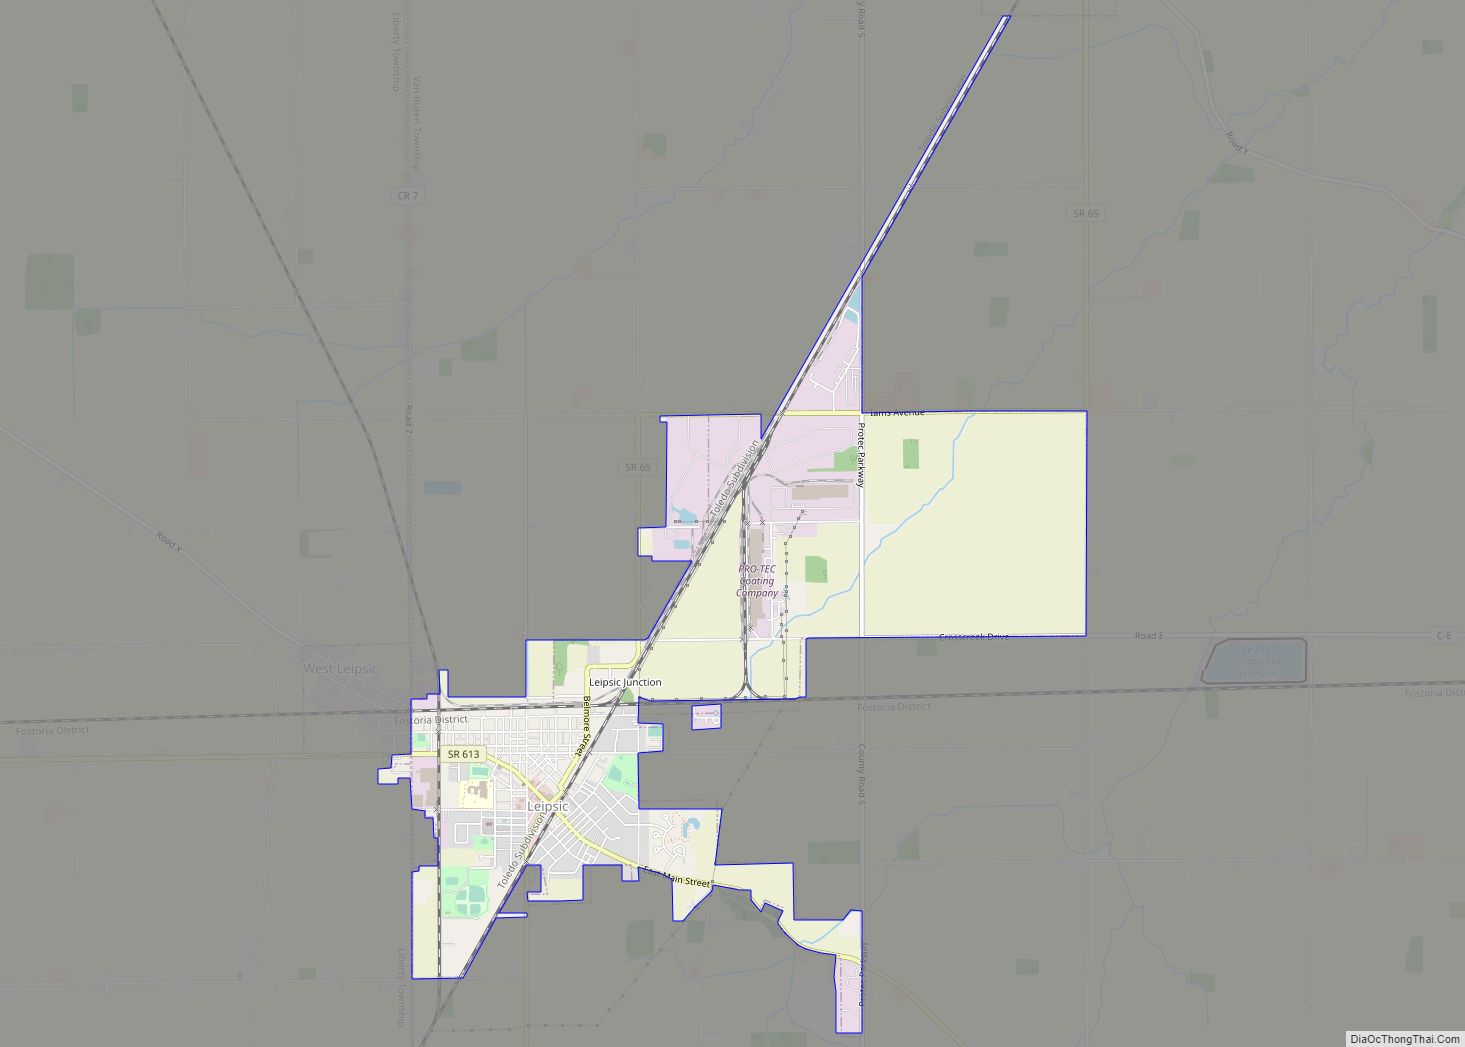 Map of Leipsic village, Ohio